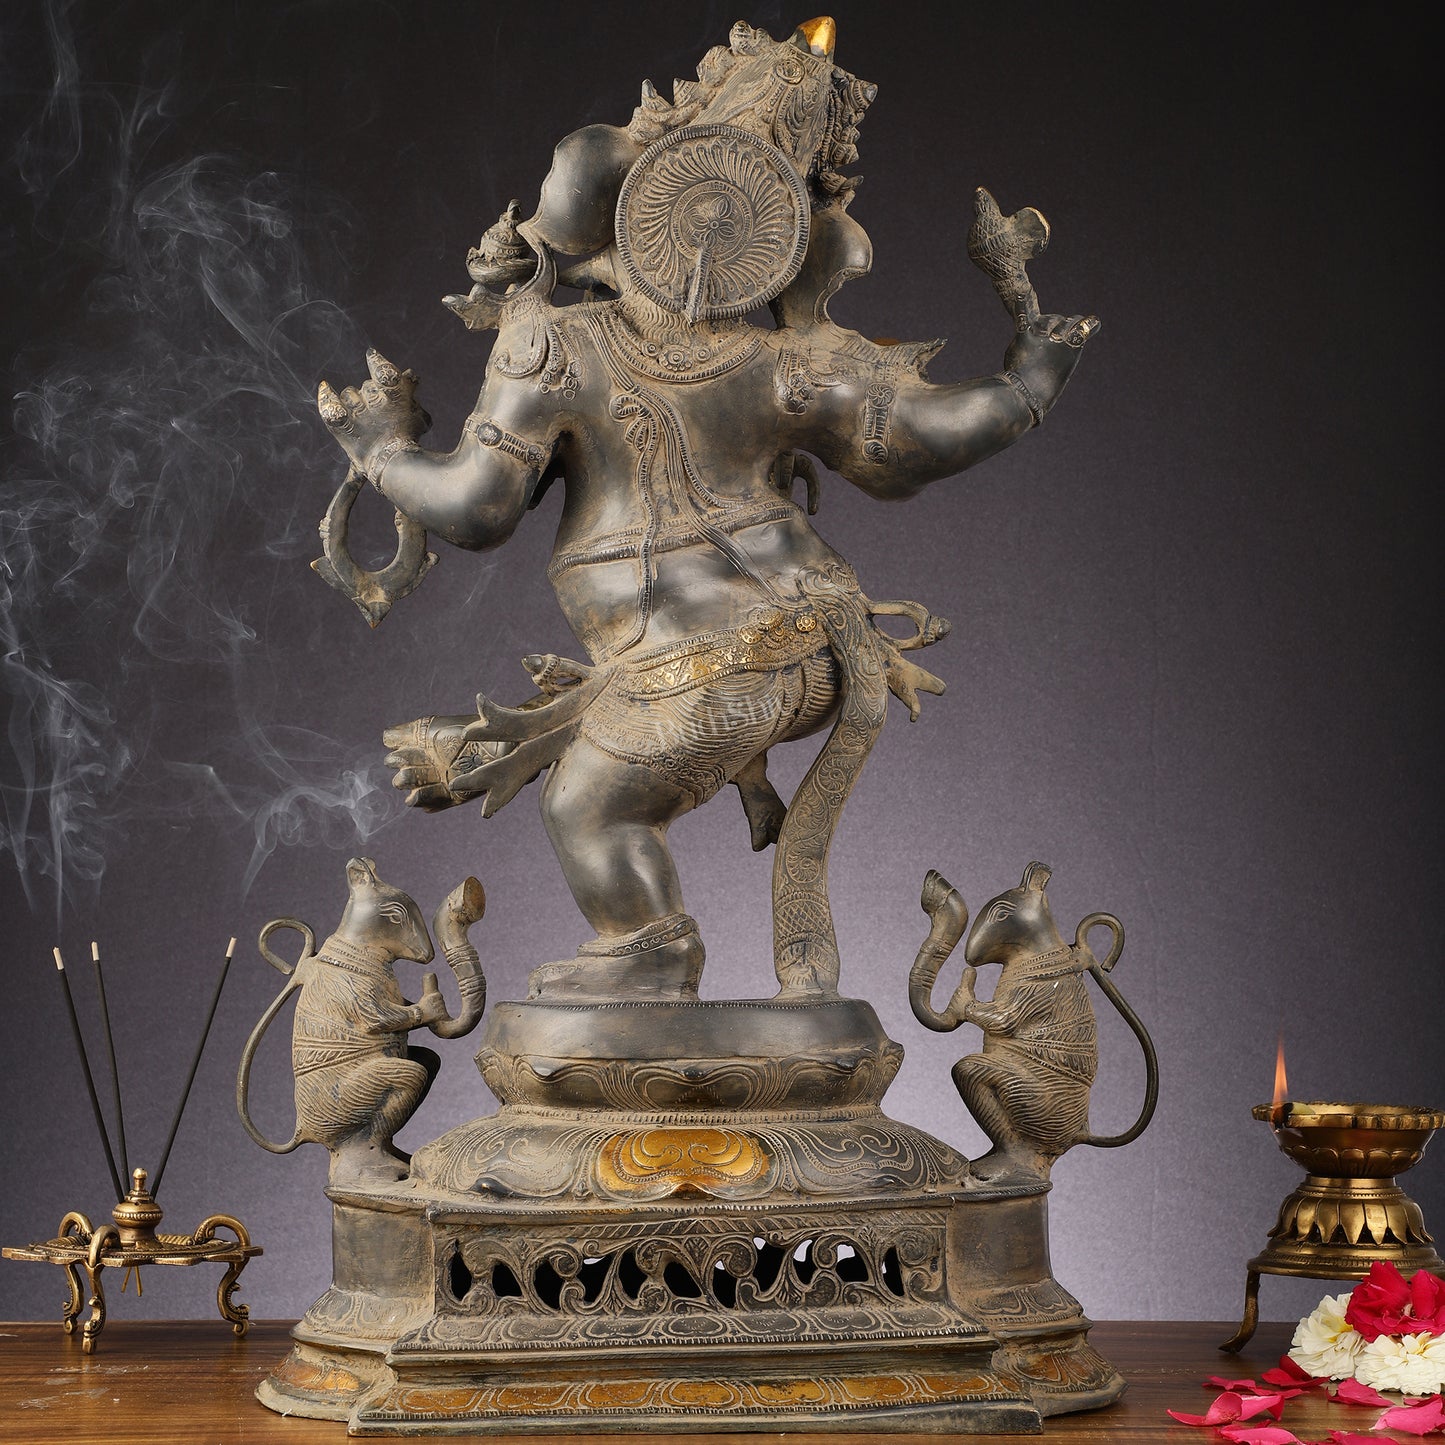 Brass Superfine Dancing Ganesha Statue - 24-Inch Masterpiece